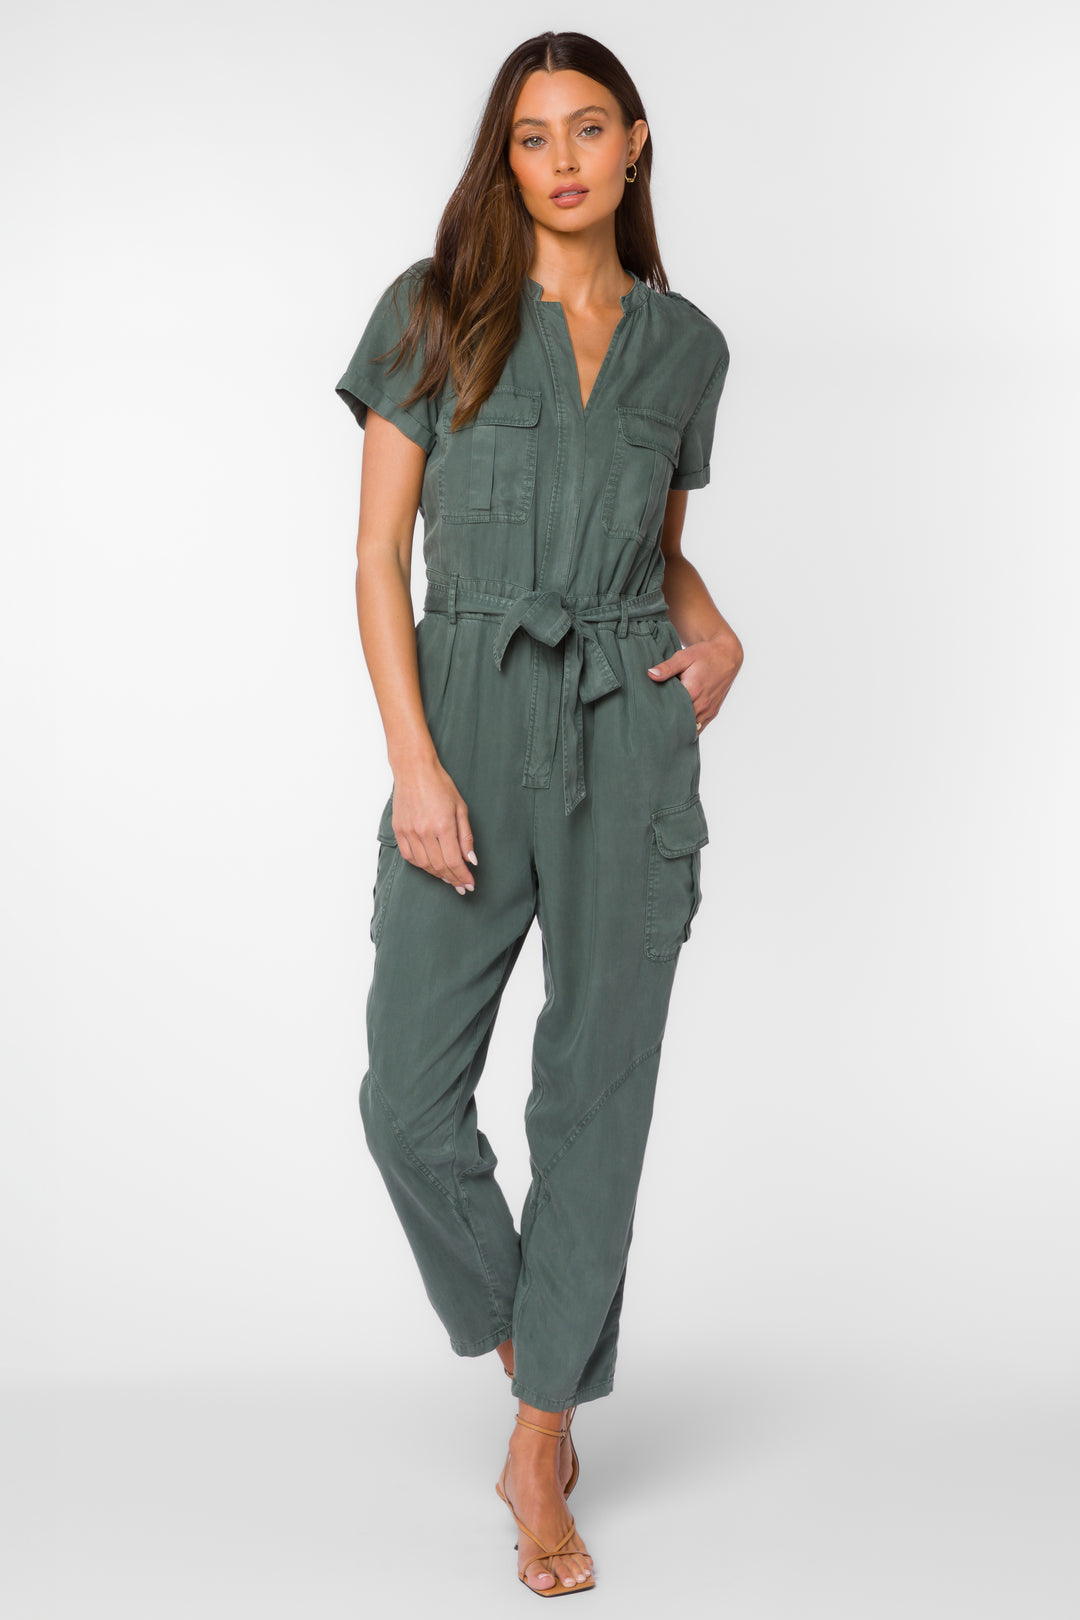 Greyson Sage Leaf Jumpsuit - Jumpsuits & Rompers - Velvet Heart Clothing